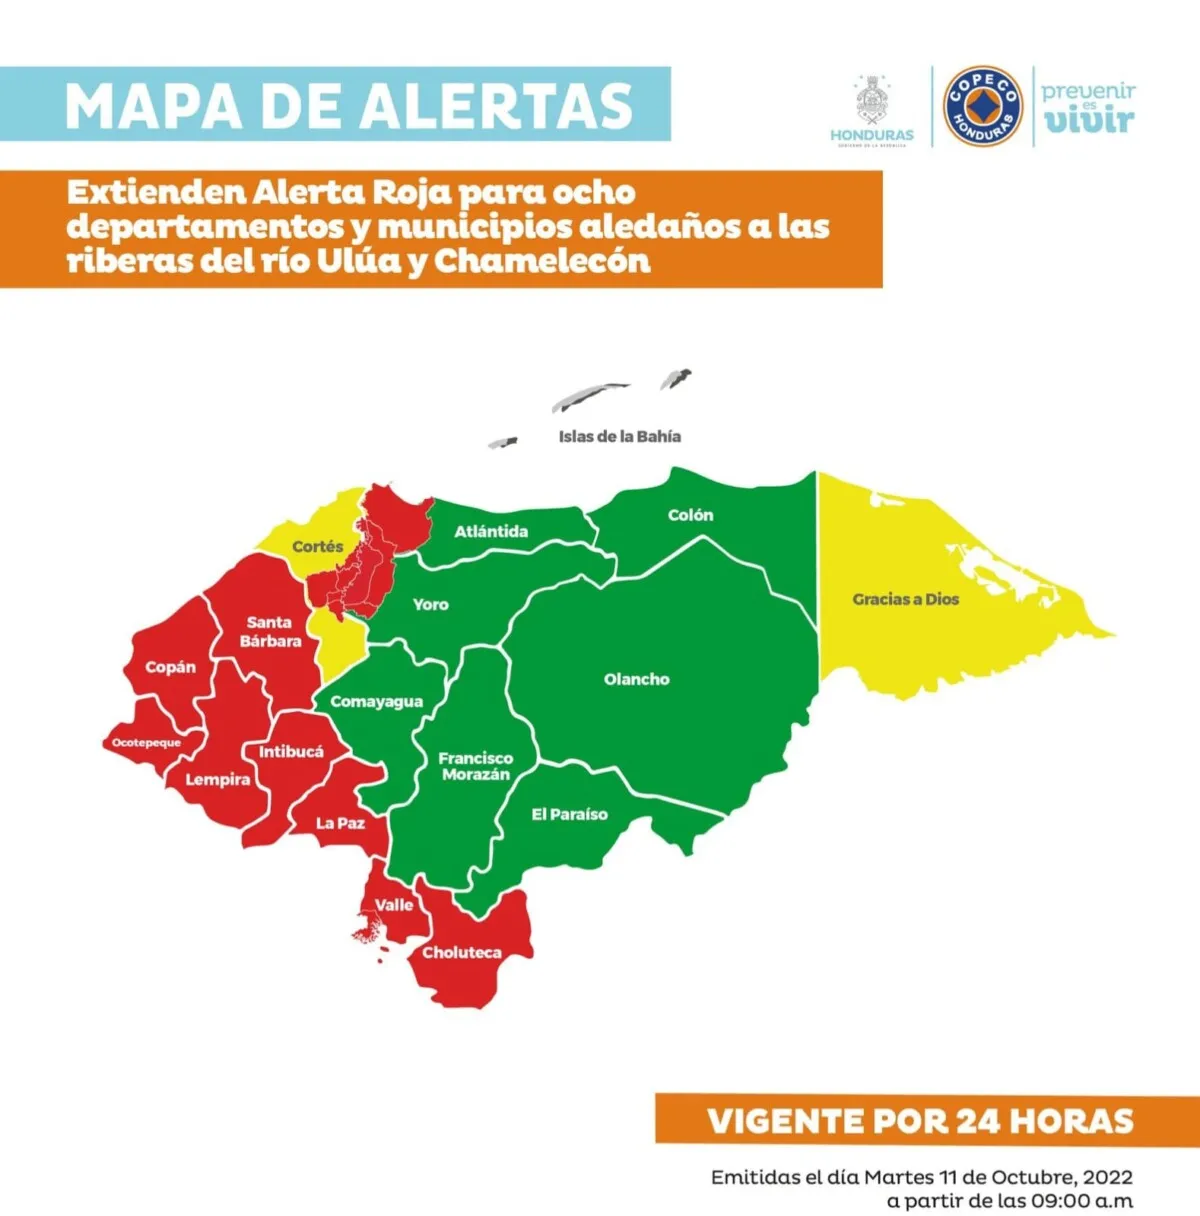 Extienden Alerta Roja para ocho departamentos y municipios aledaños a las riberas del río Ulúa y Chamelecón